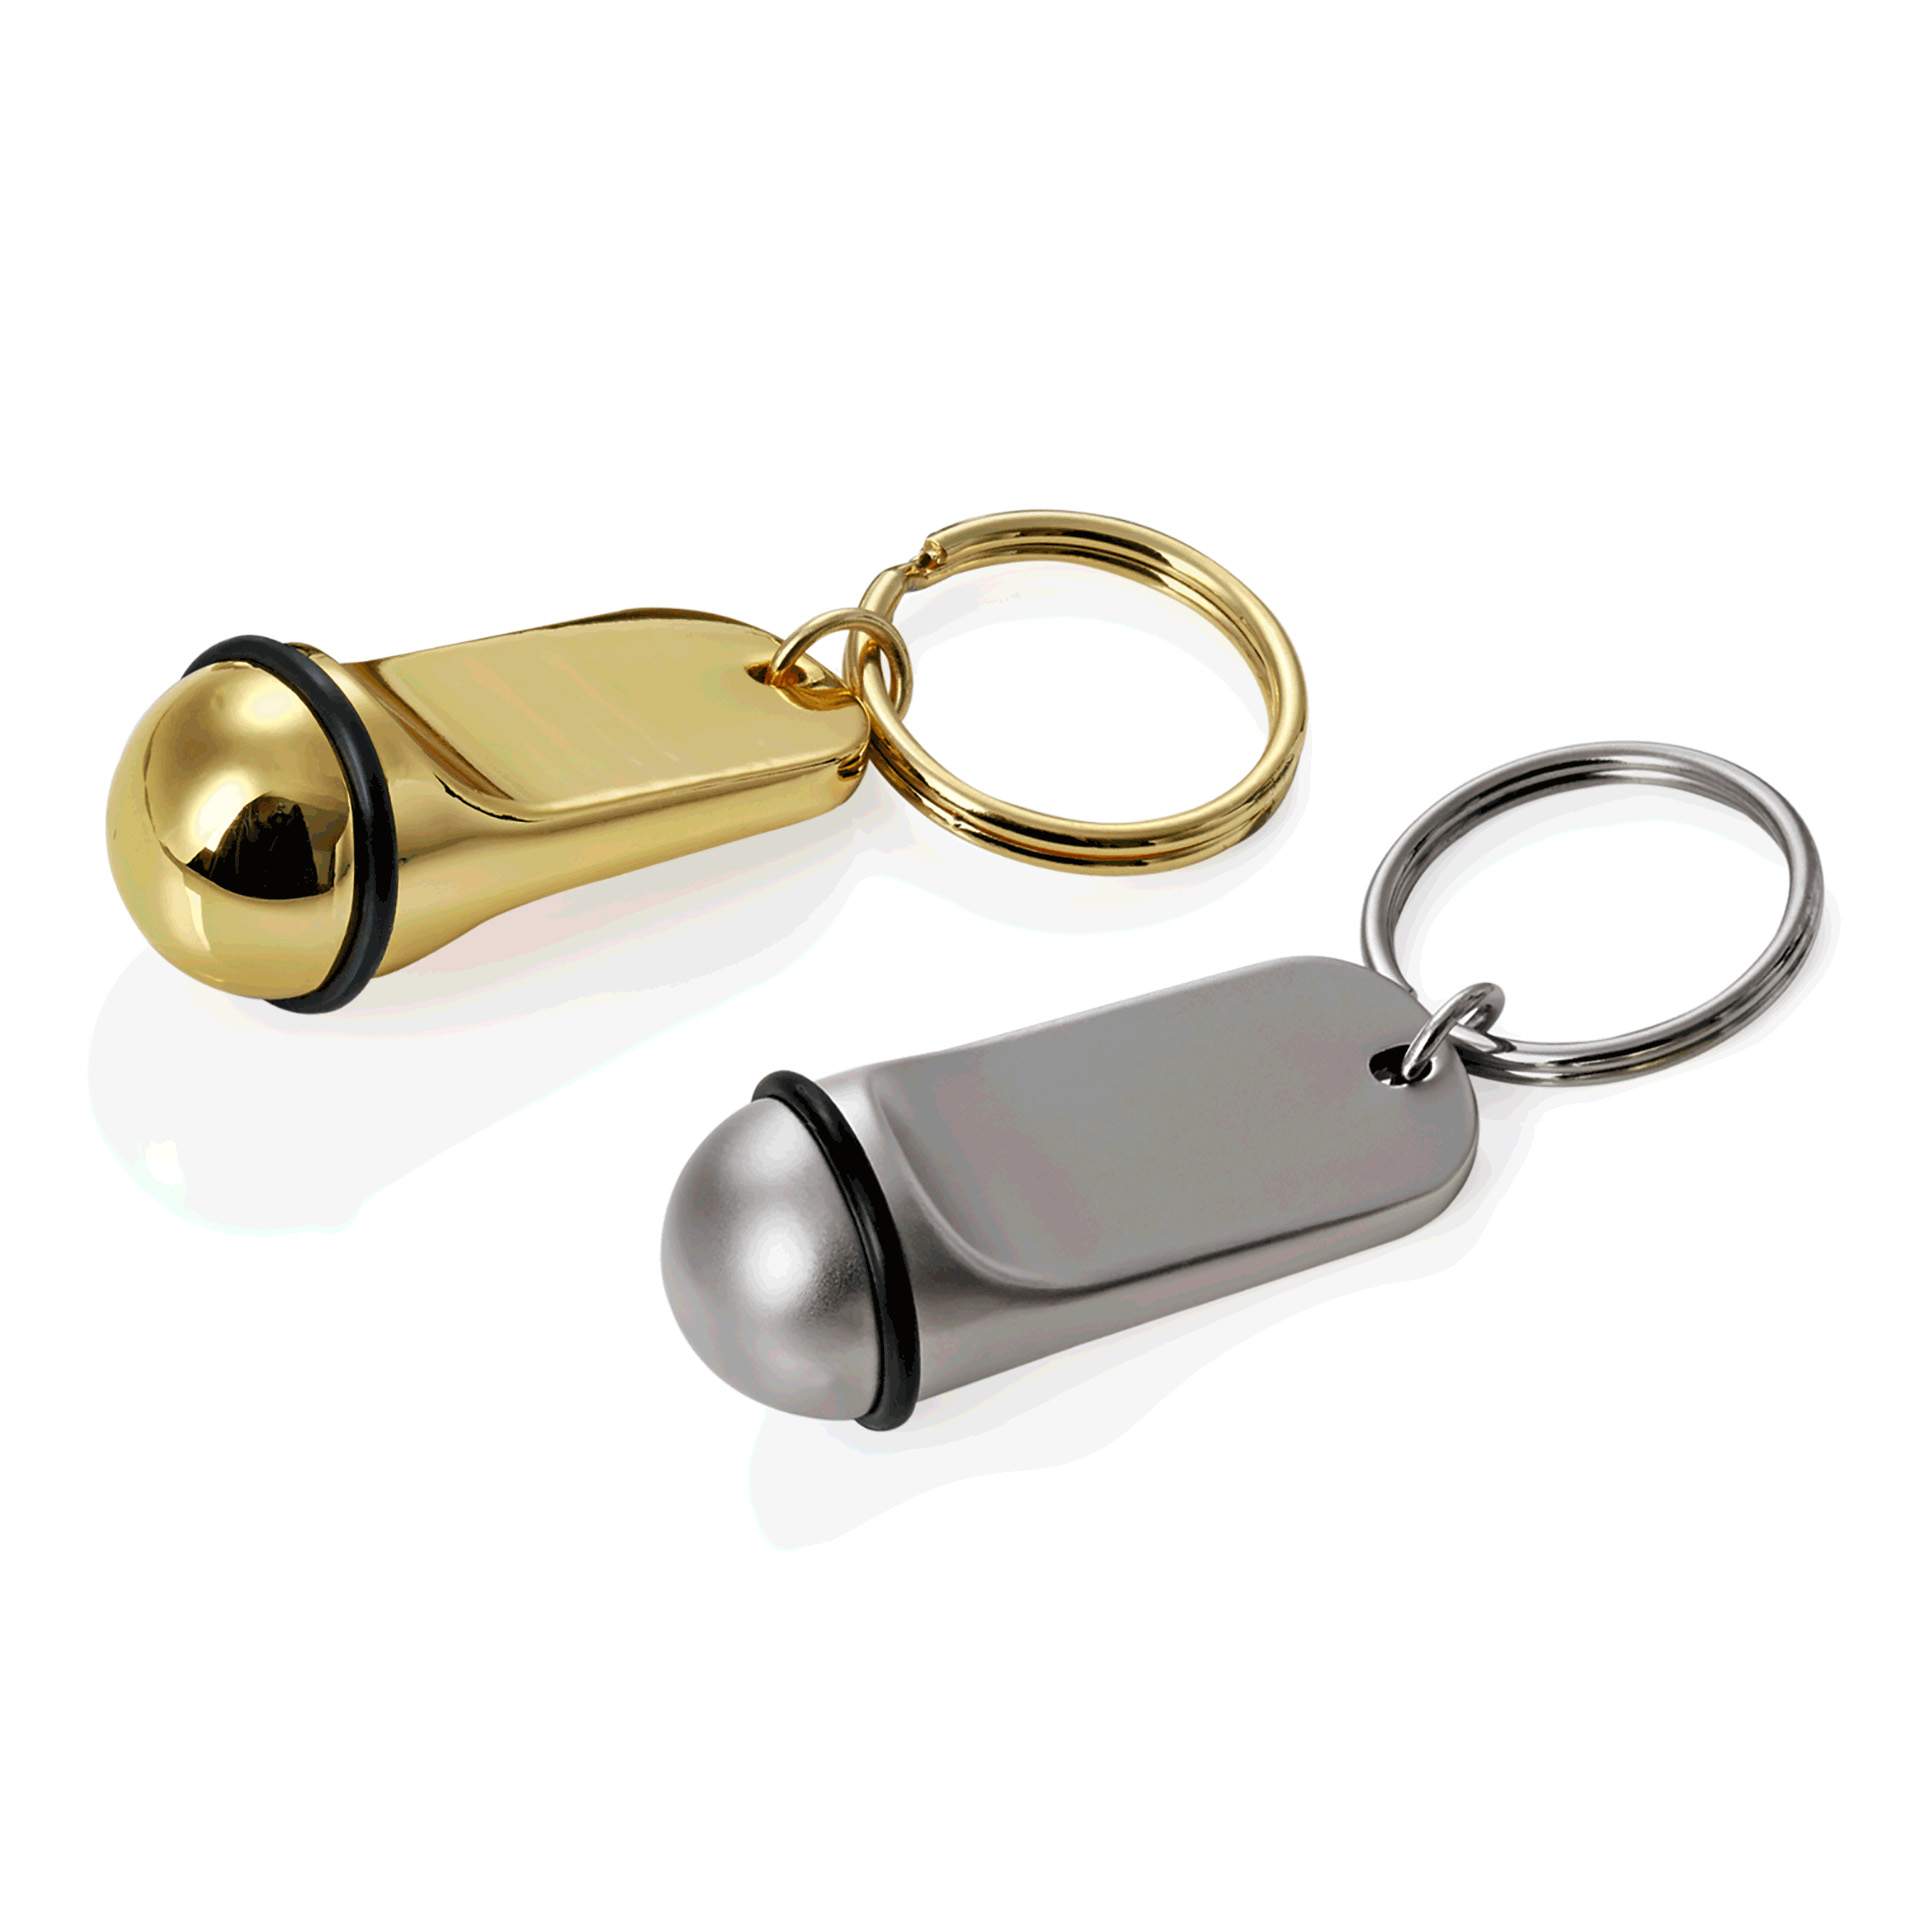 Schlüsselanhänger - ohne Gravur - silber - Abm. 2 x 5 cm - Zinkguss - 4319001-A